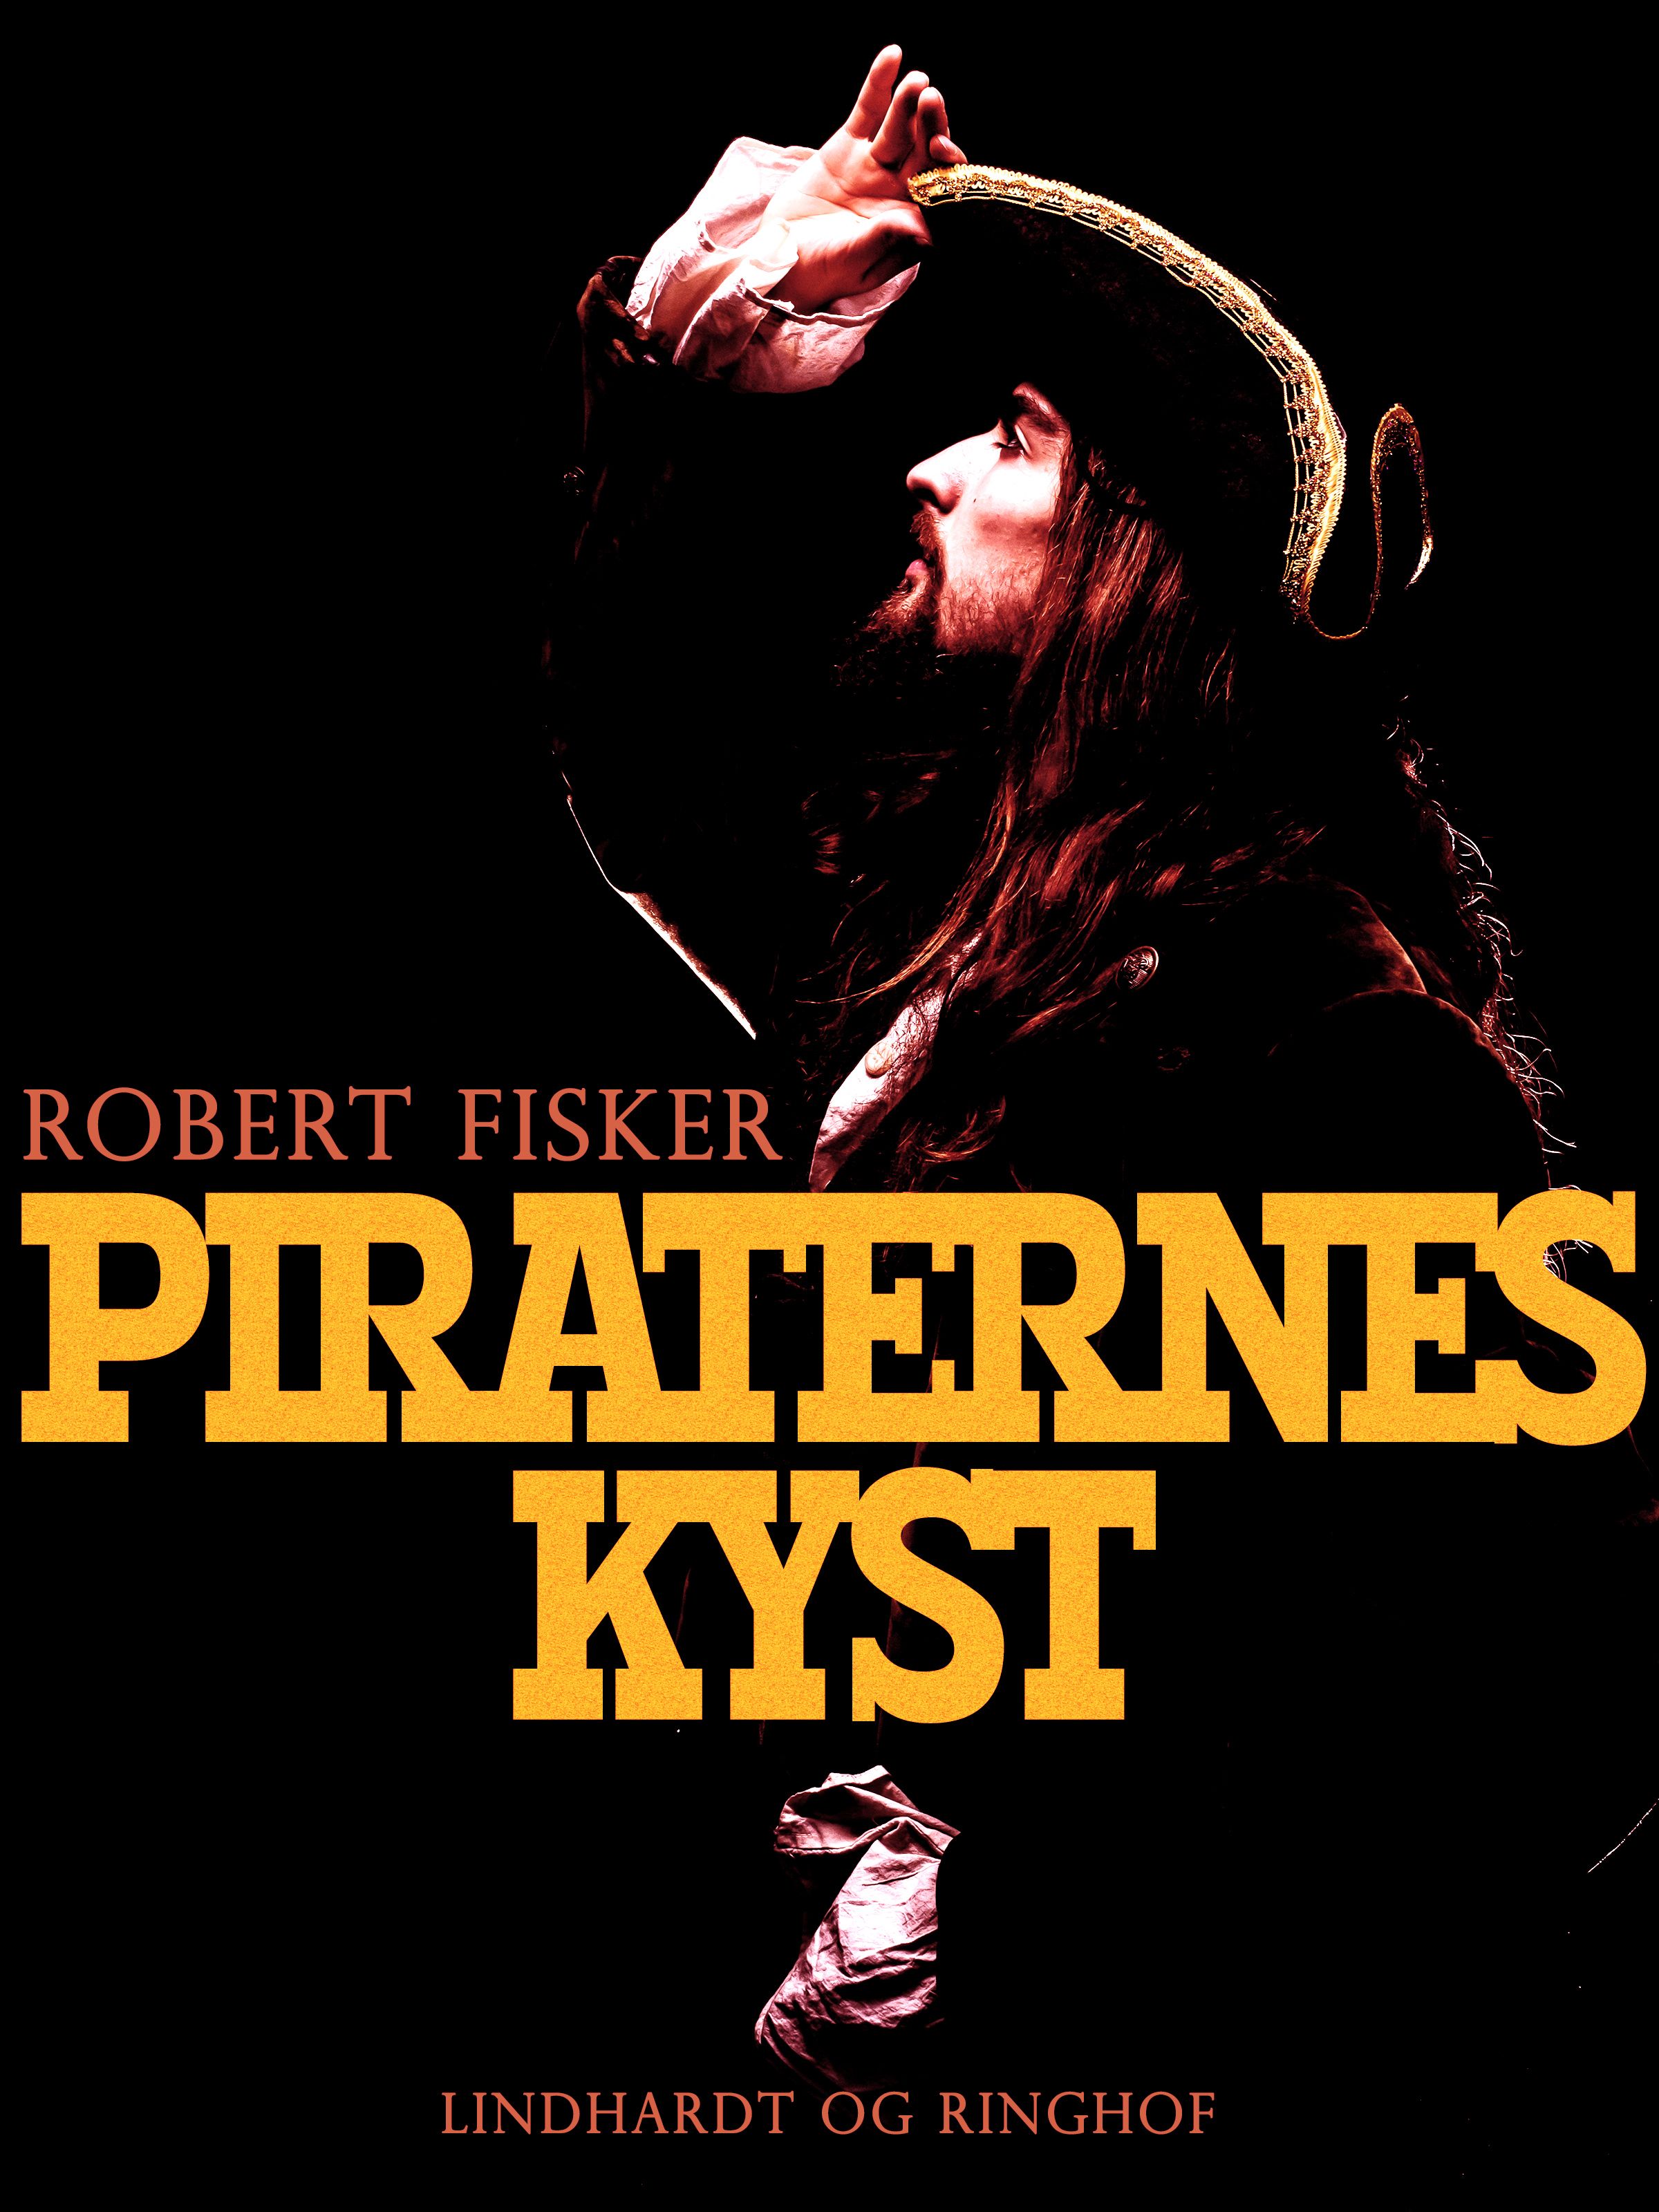 Piraternes kyst, e-bok av Robert Fisker